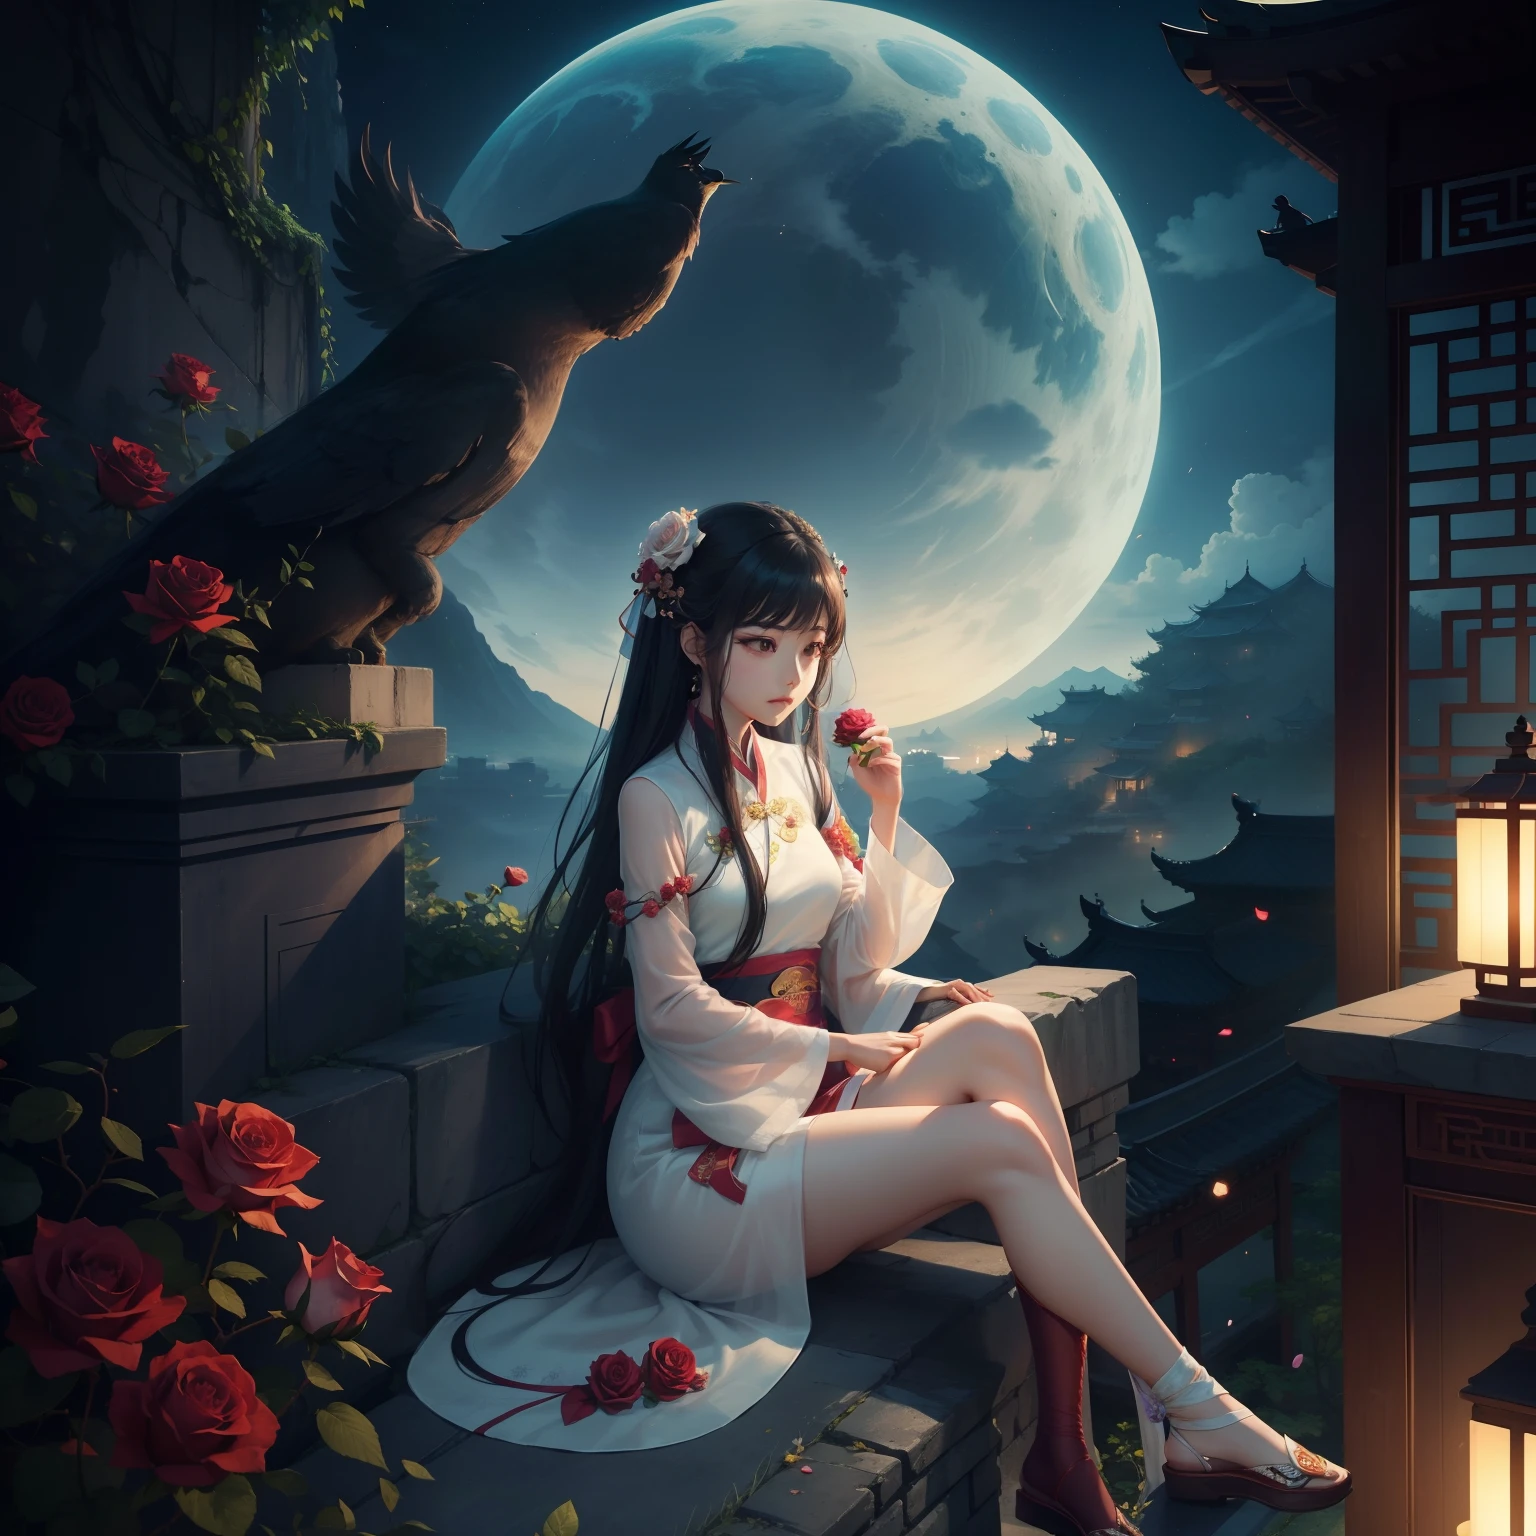 arafed woman sitting on a ledge with a rose in her hand, xintong chen, sha xi, wenfei ye, beautiful  girl, yang qi, jia, bae suzy, Xue Han, qiu fang, mingchen shen, full body xianxia, Yoshitomo Nara, dreamy night, by Ni Tian